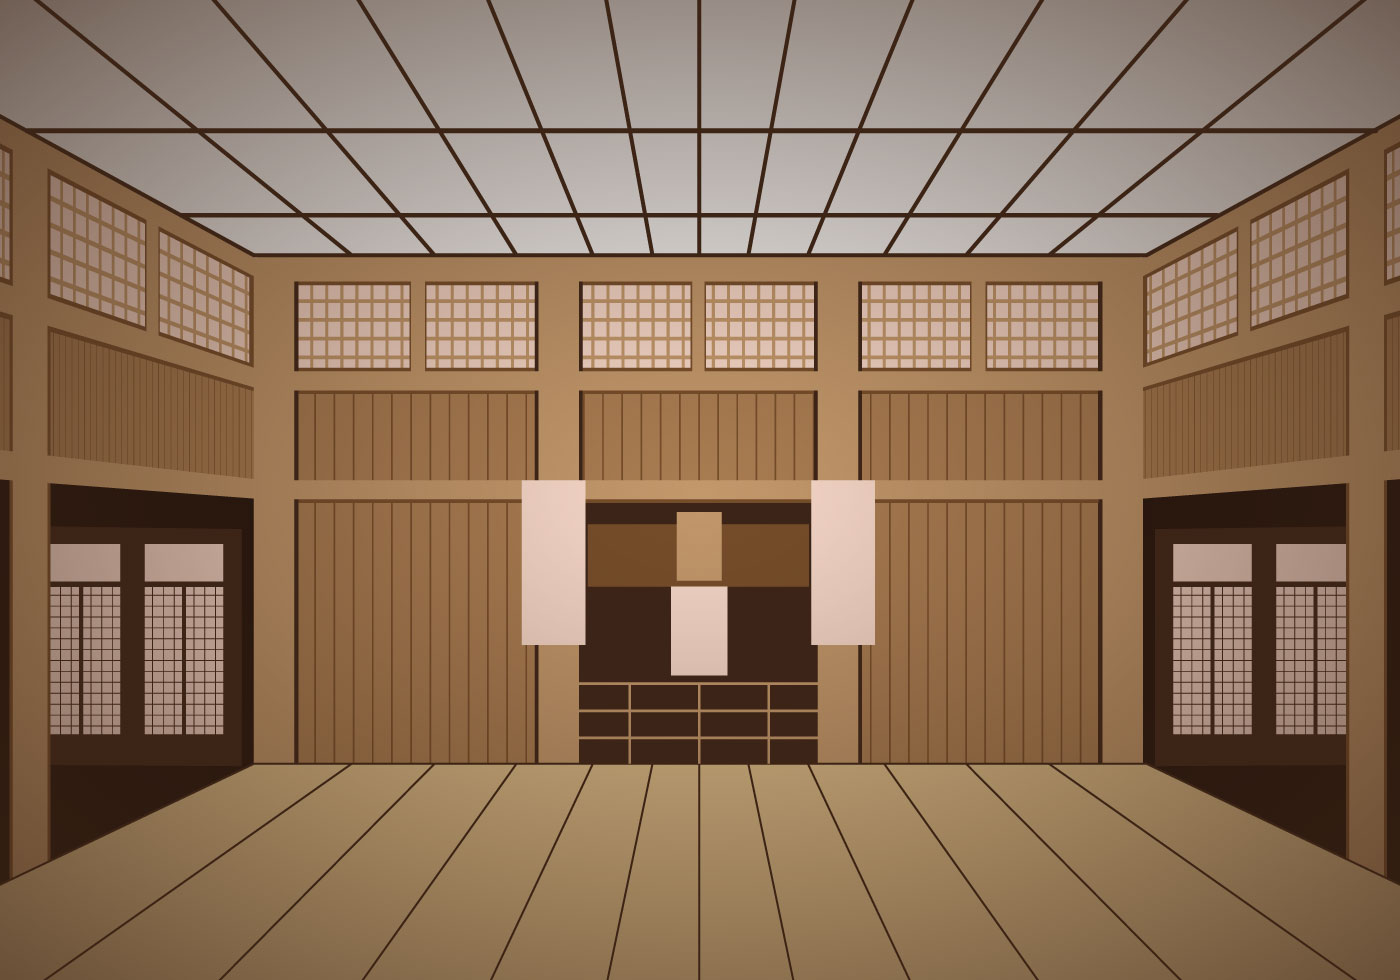 Indoor Dojo Temple 149221 - Download Free Vectors, Clipart Graphics